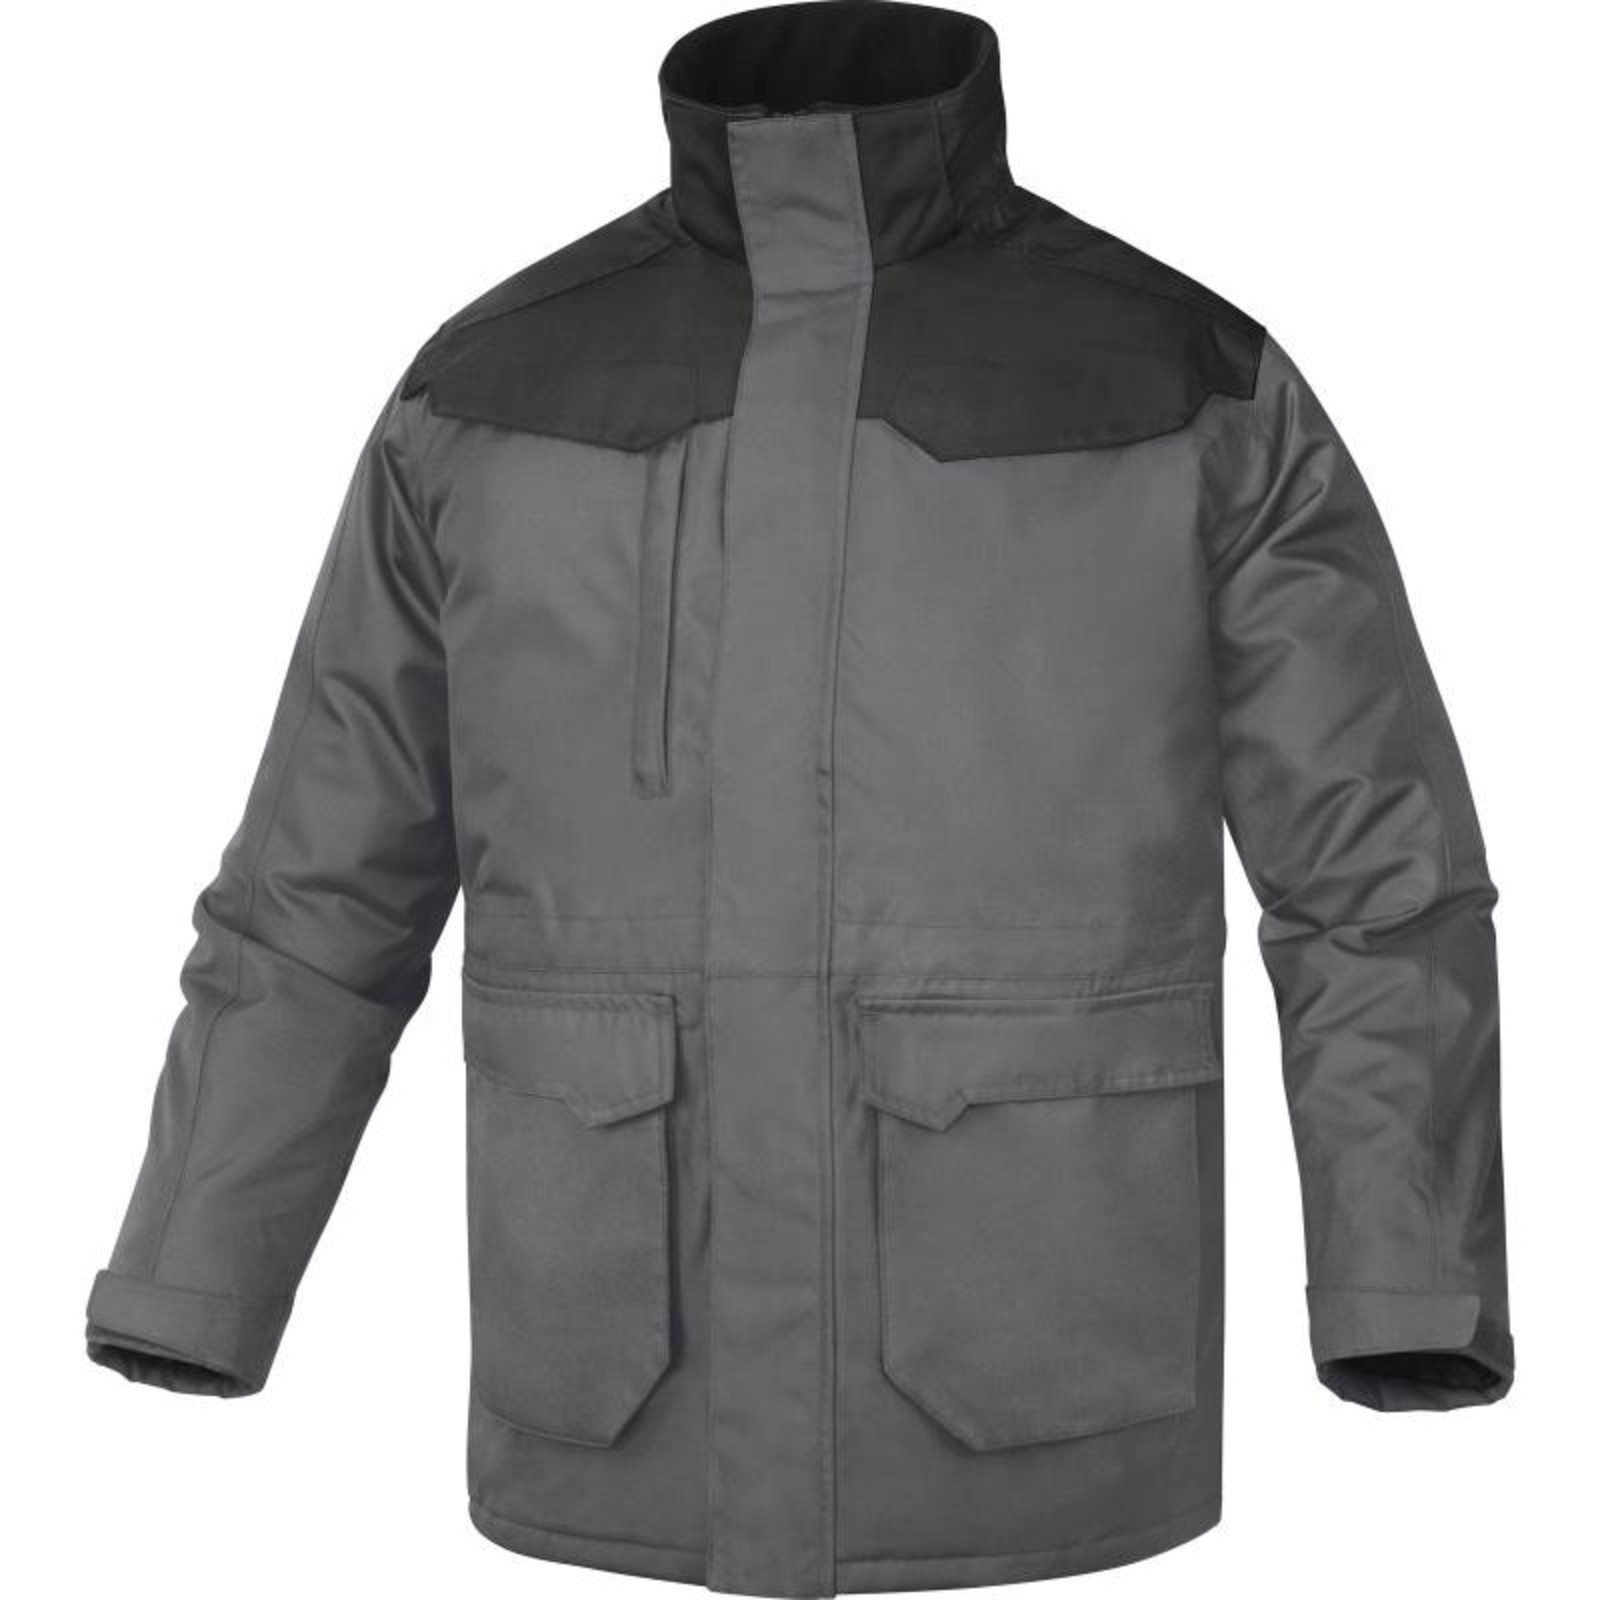 Zimná bunda Delta Plus Carson2 - veľkosť: L, farba: sivá/čierna